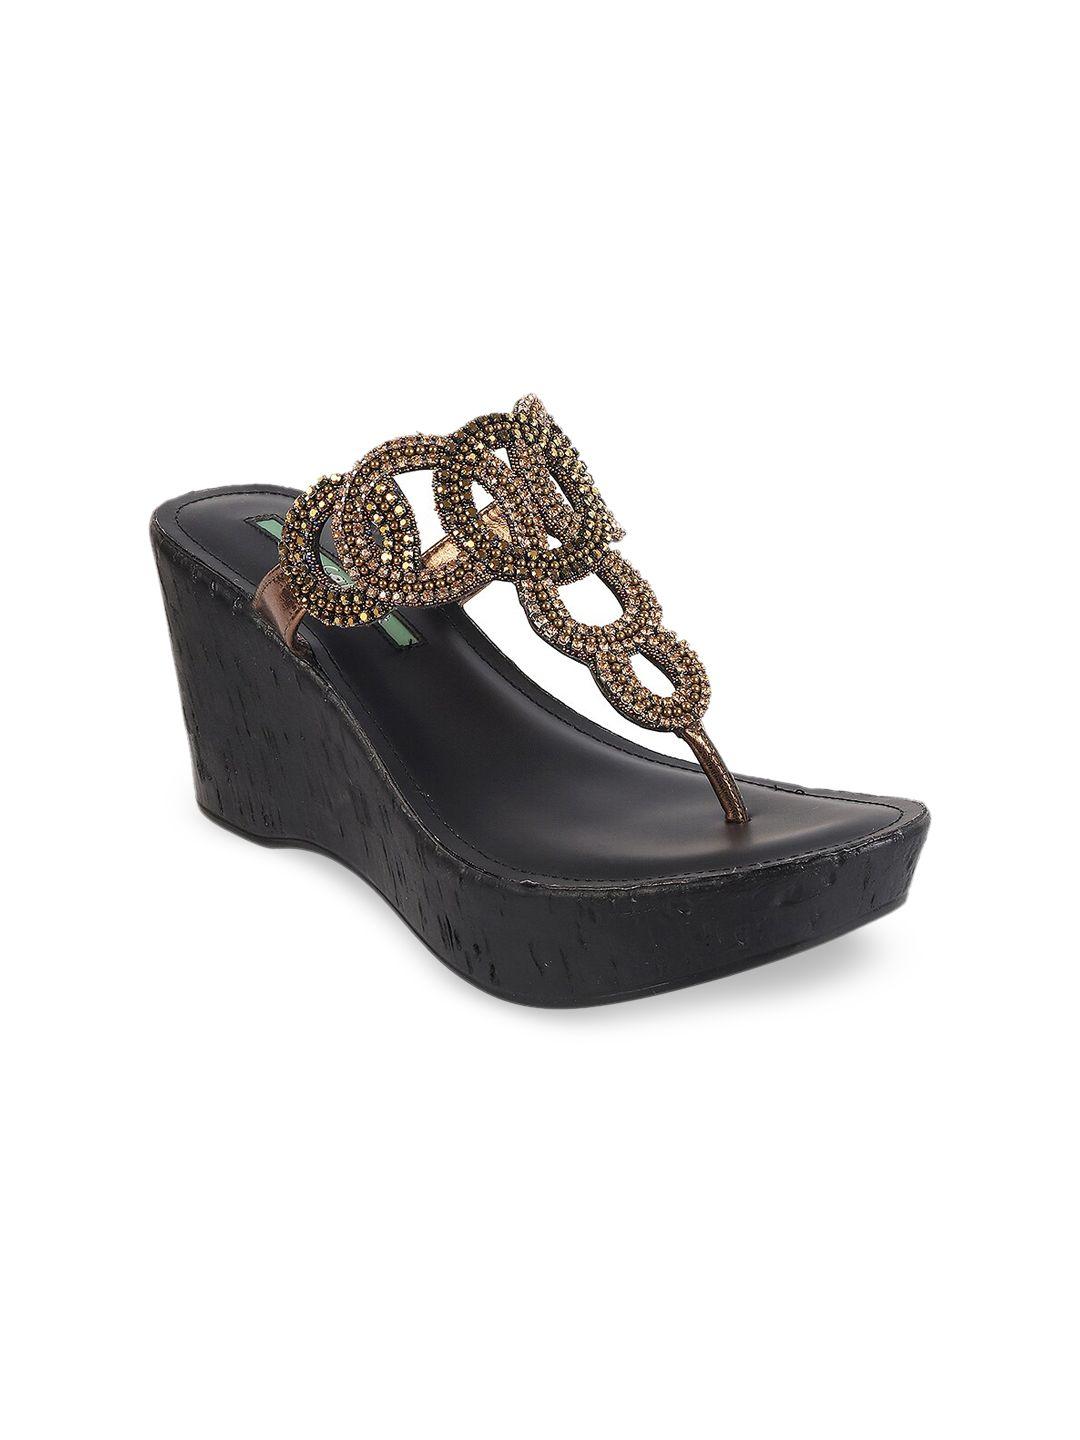 catwalk-women-bronze-toned-embellished-wedge-heels